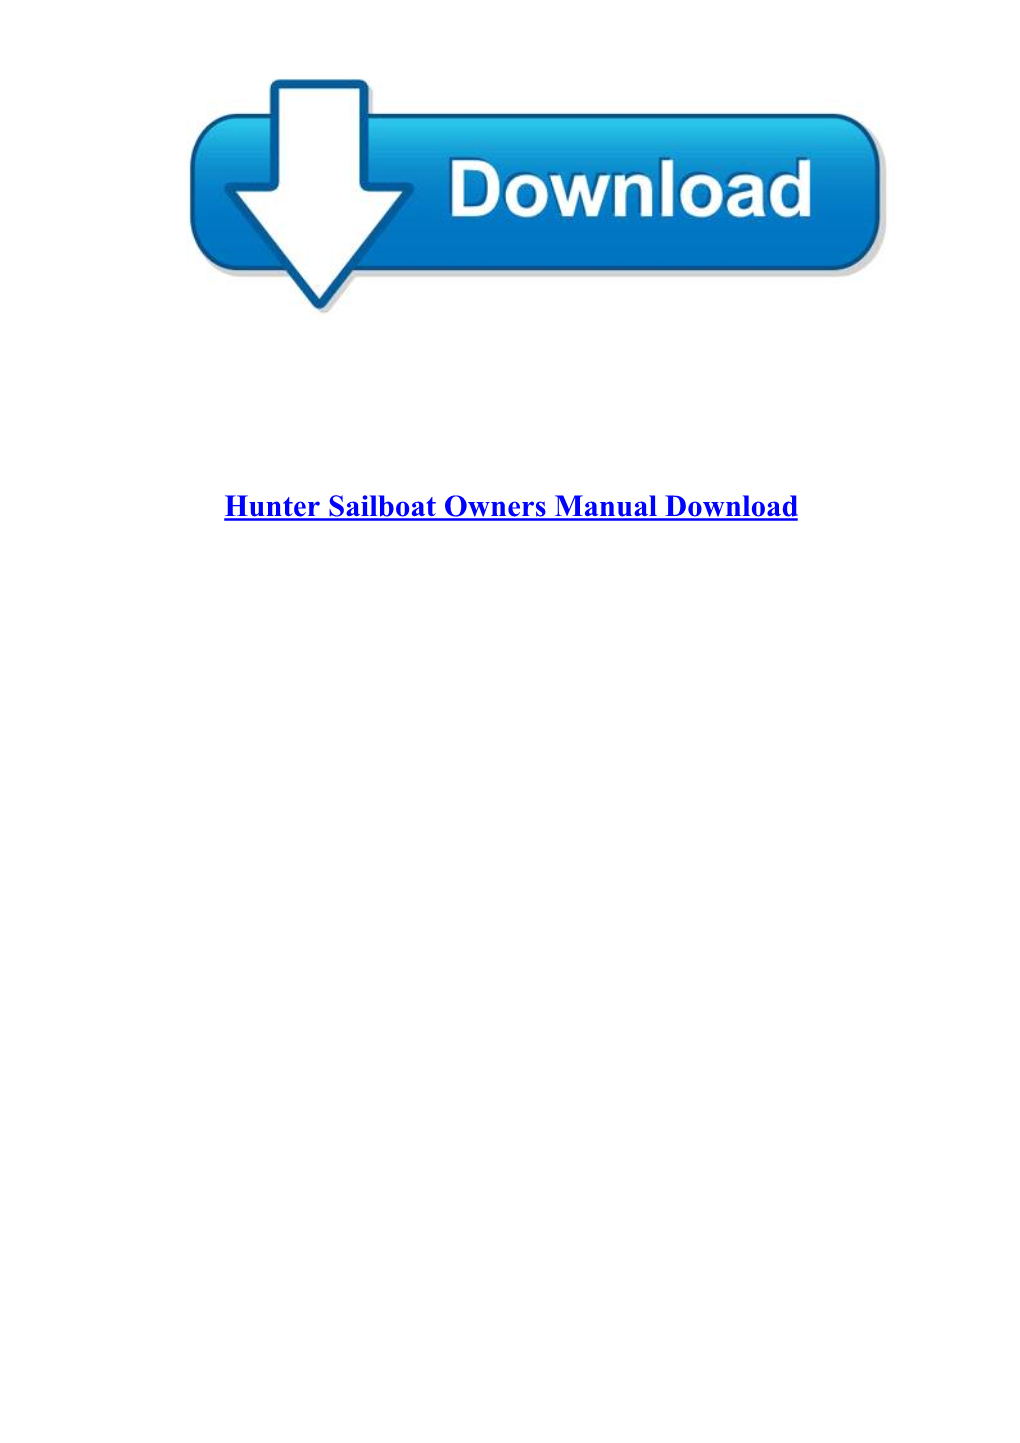 Hunter Sailboat Owners Manual Download Hunter Sailboat Owners Manual